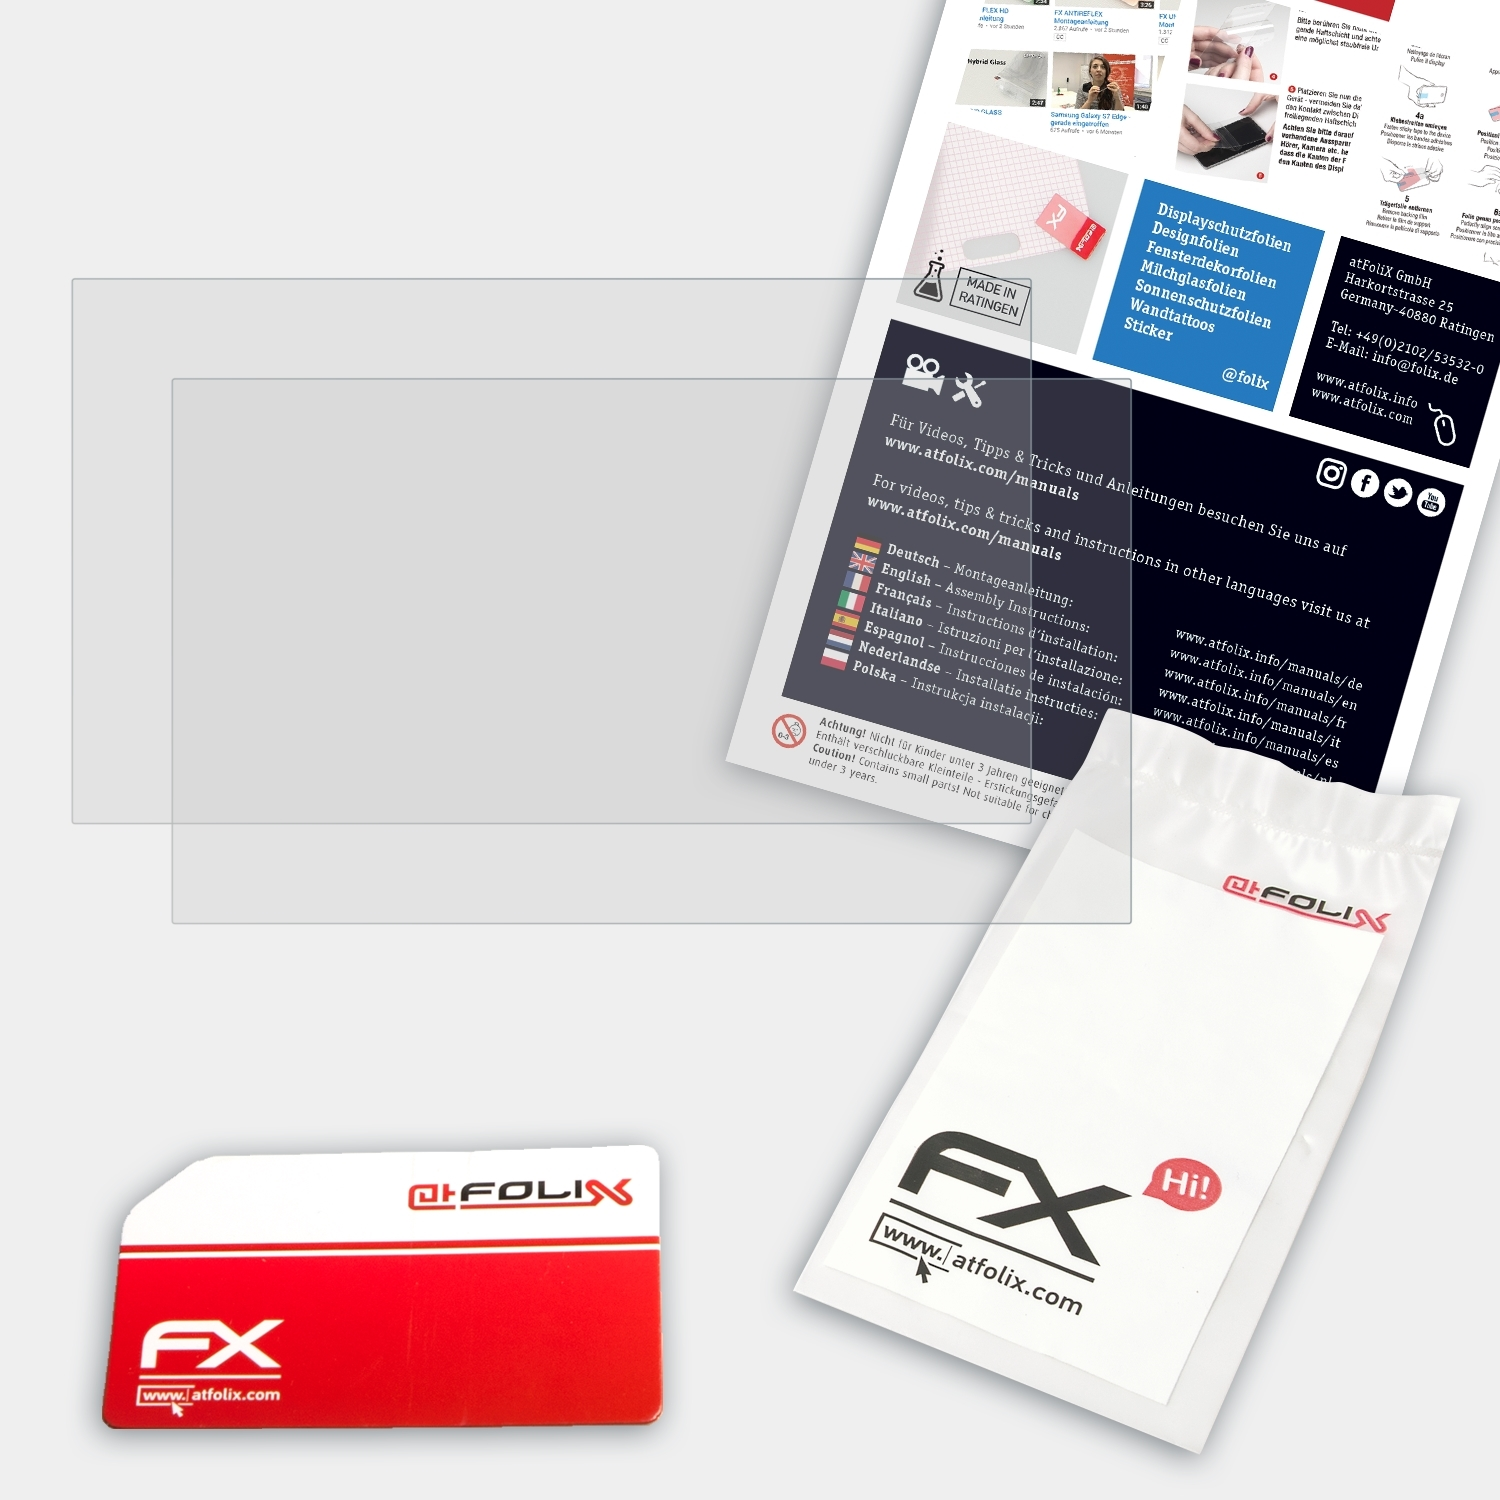 FX-Antireflex Archos Tablet) ATFOLIX Internet 2x Displayschutz(für 101